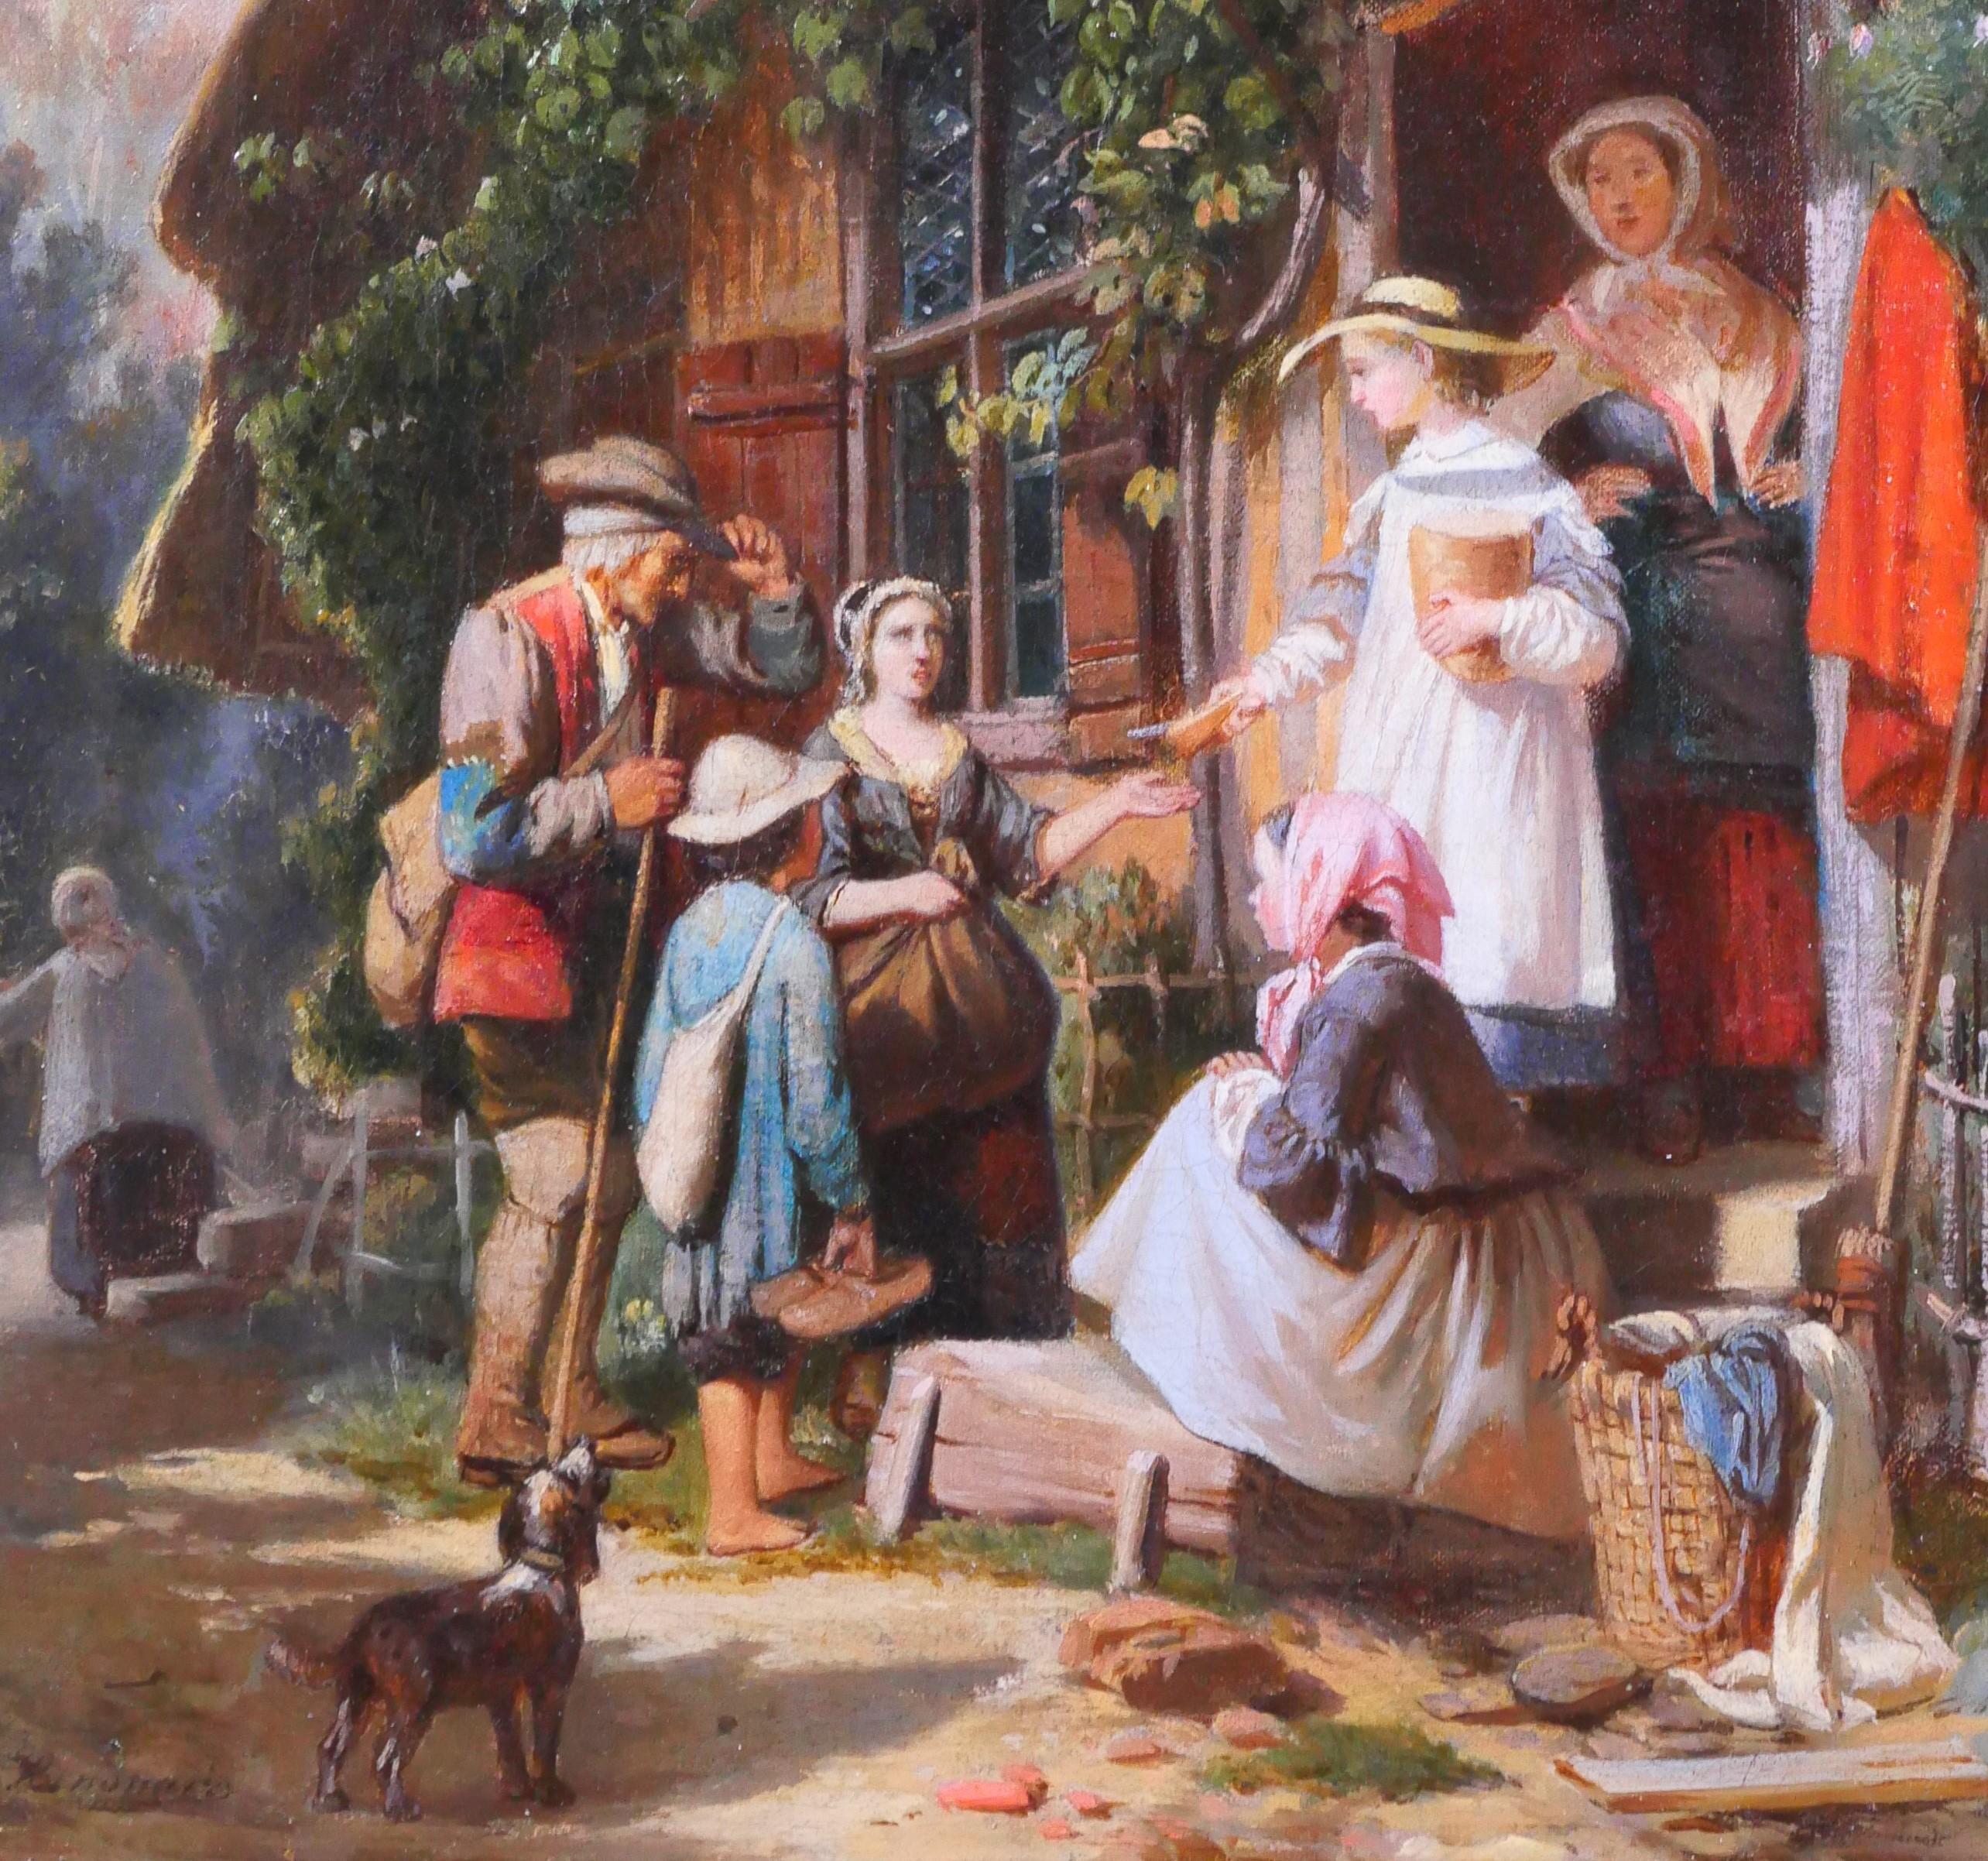 Anthony Eugène RENOUARD
Cour-Cheverny, 1835 - Paris, 1921
Scène paysanne, jeune femme donnant du pain
Peinture, huile sur toile
Signé en bas à gauche
Peinture : 24 x 32.5 cm (9.4 x 12.8 inches)
Très beau cadre du 19ème siècle : 40,5 x 49 cm (15,7 x